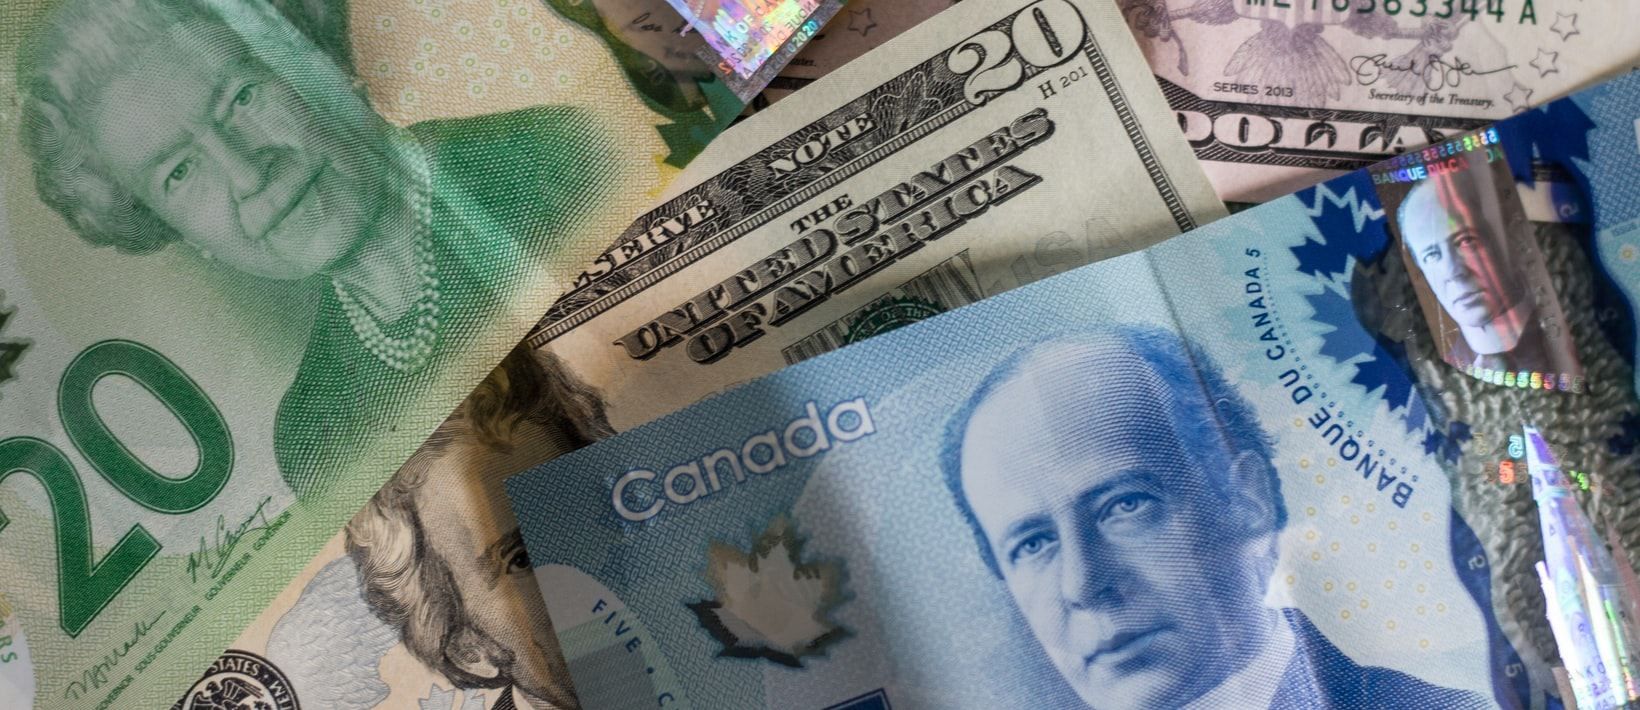 Відлуння позачергових виборів у Канаді: як це вплине на позиції канадського долара - Фінанси